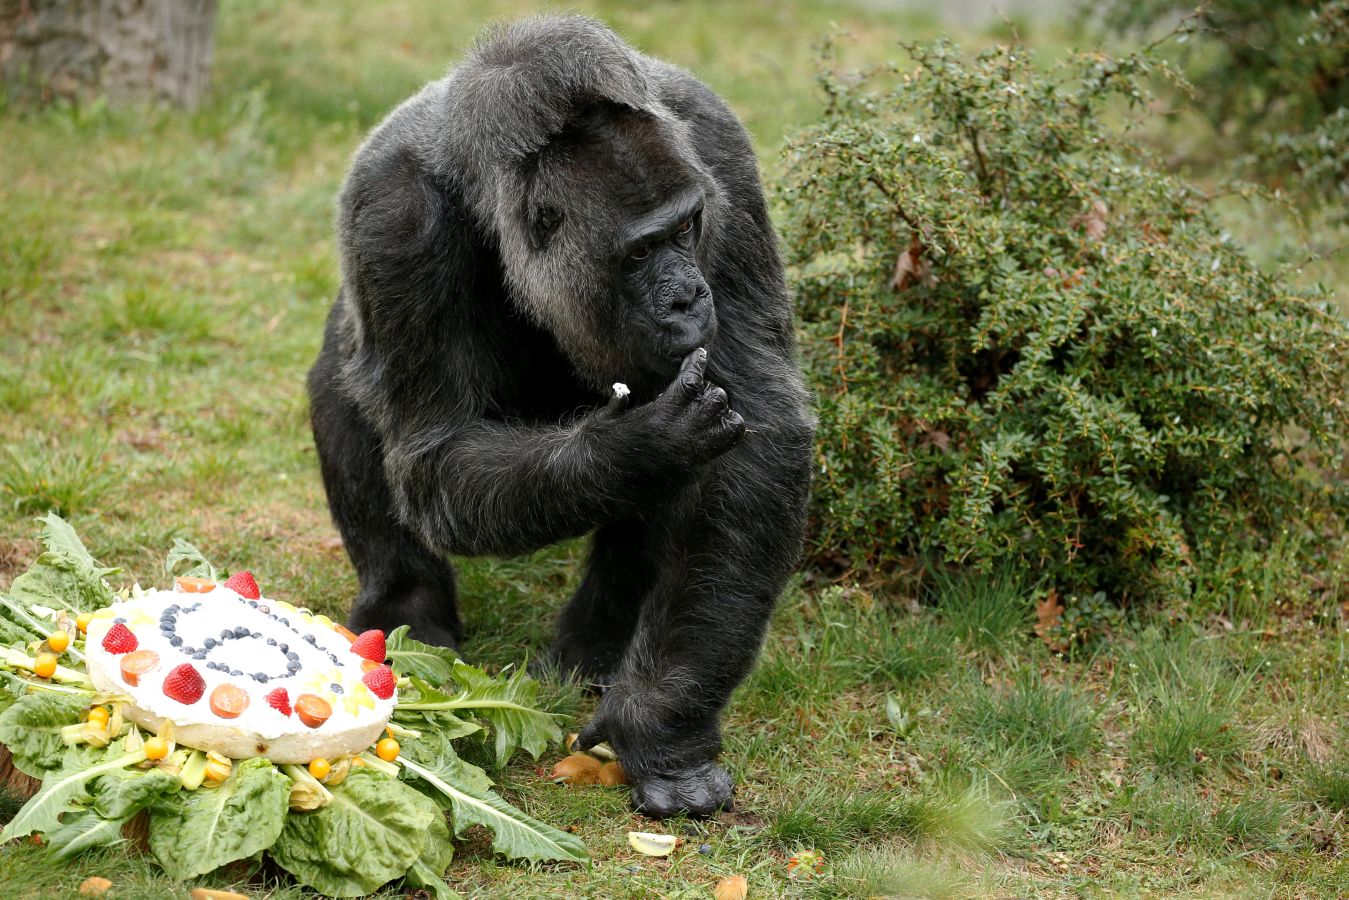 Es el gorila más longevo de Europa y, por eso, en el zoo de Berlín han celebrado su cumpleaños por todo lo alto. Incluso con tarta. No es para menos, Fatou cumple unos golosos 61.